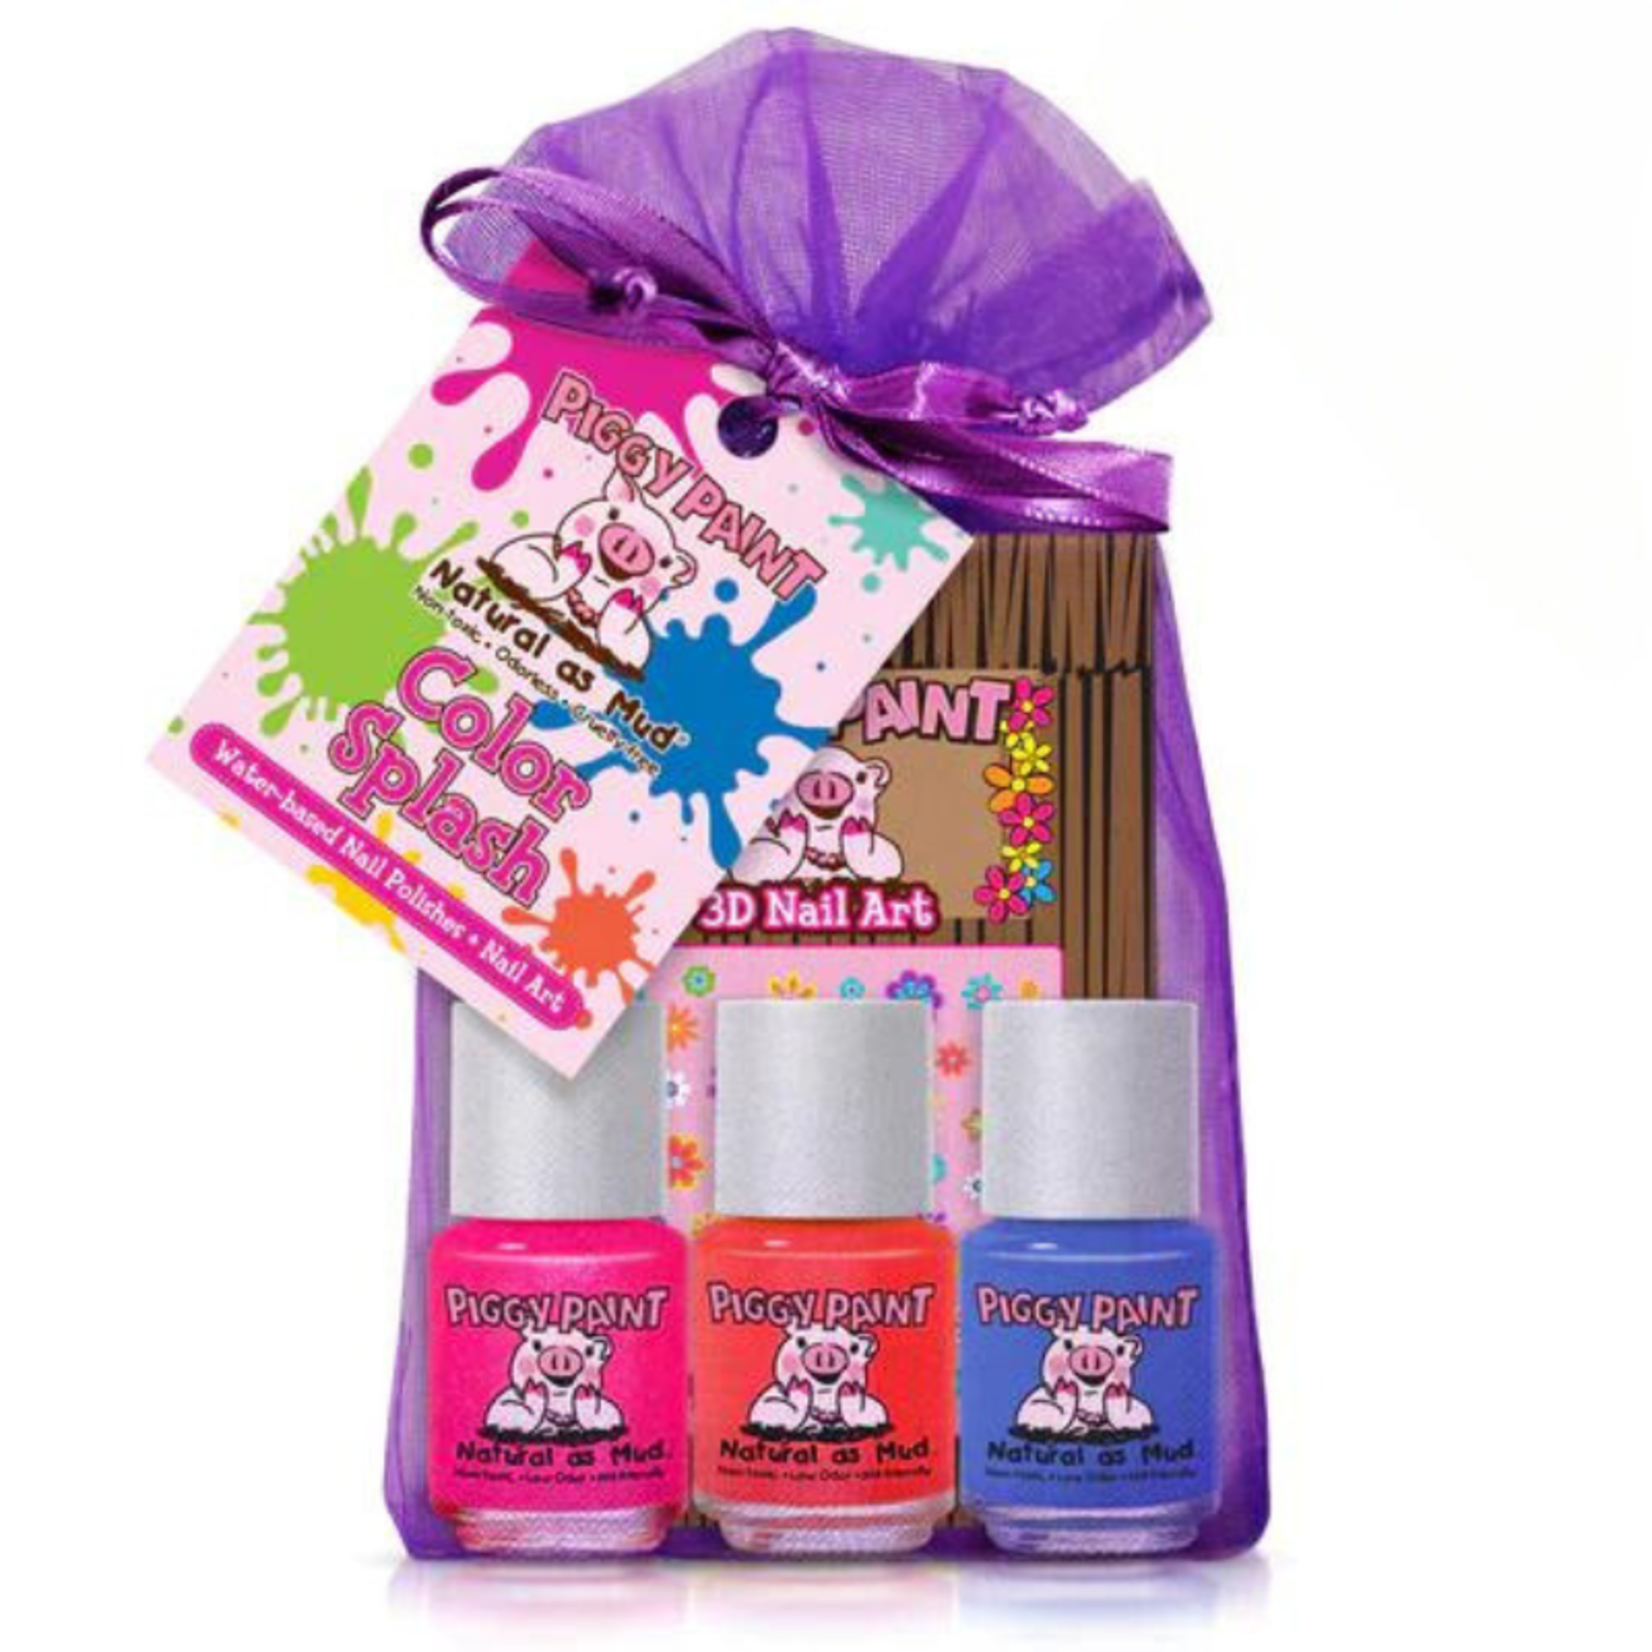 Piggy Paint Piggy Paint Colour Splash Gift Set 3 polish/Nail Art